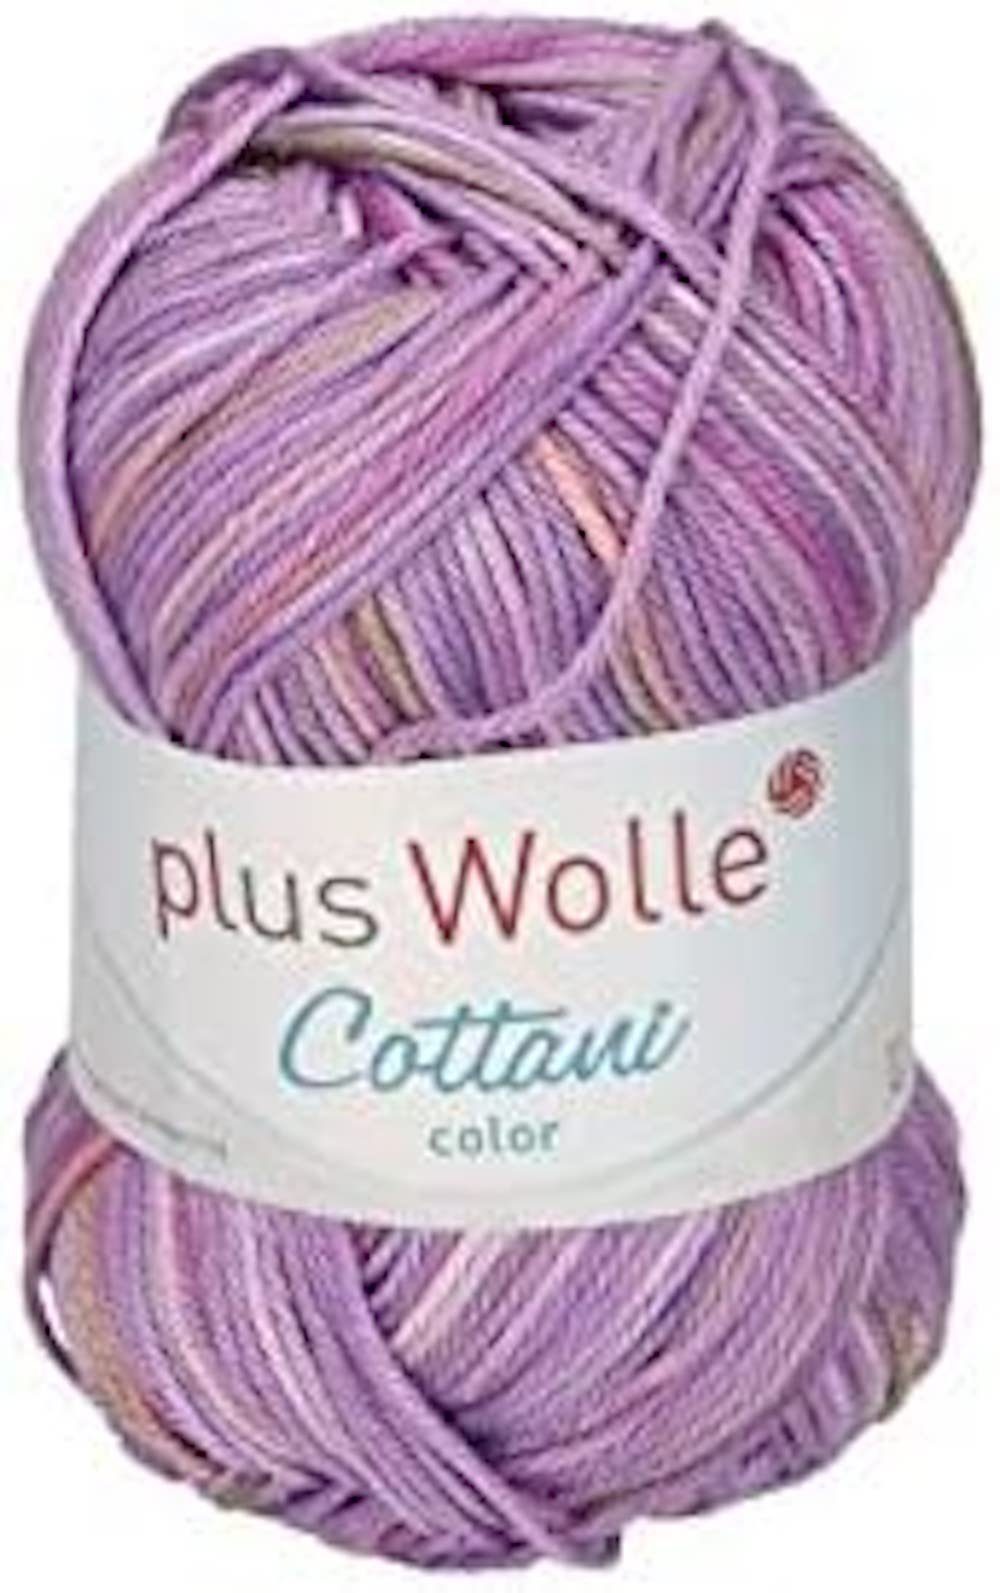 H-Erzmade Dekofigur Plus Wolle Cottani Color, 50g/125m, 100% Baumwolle Lila